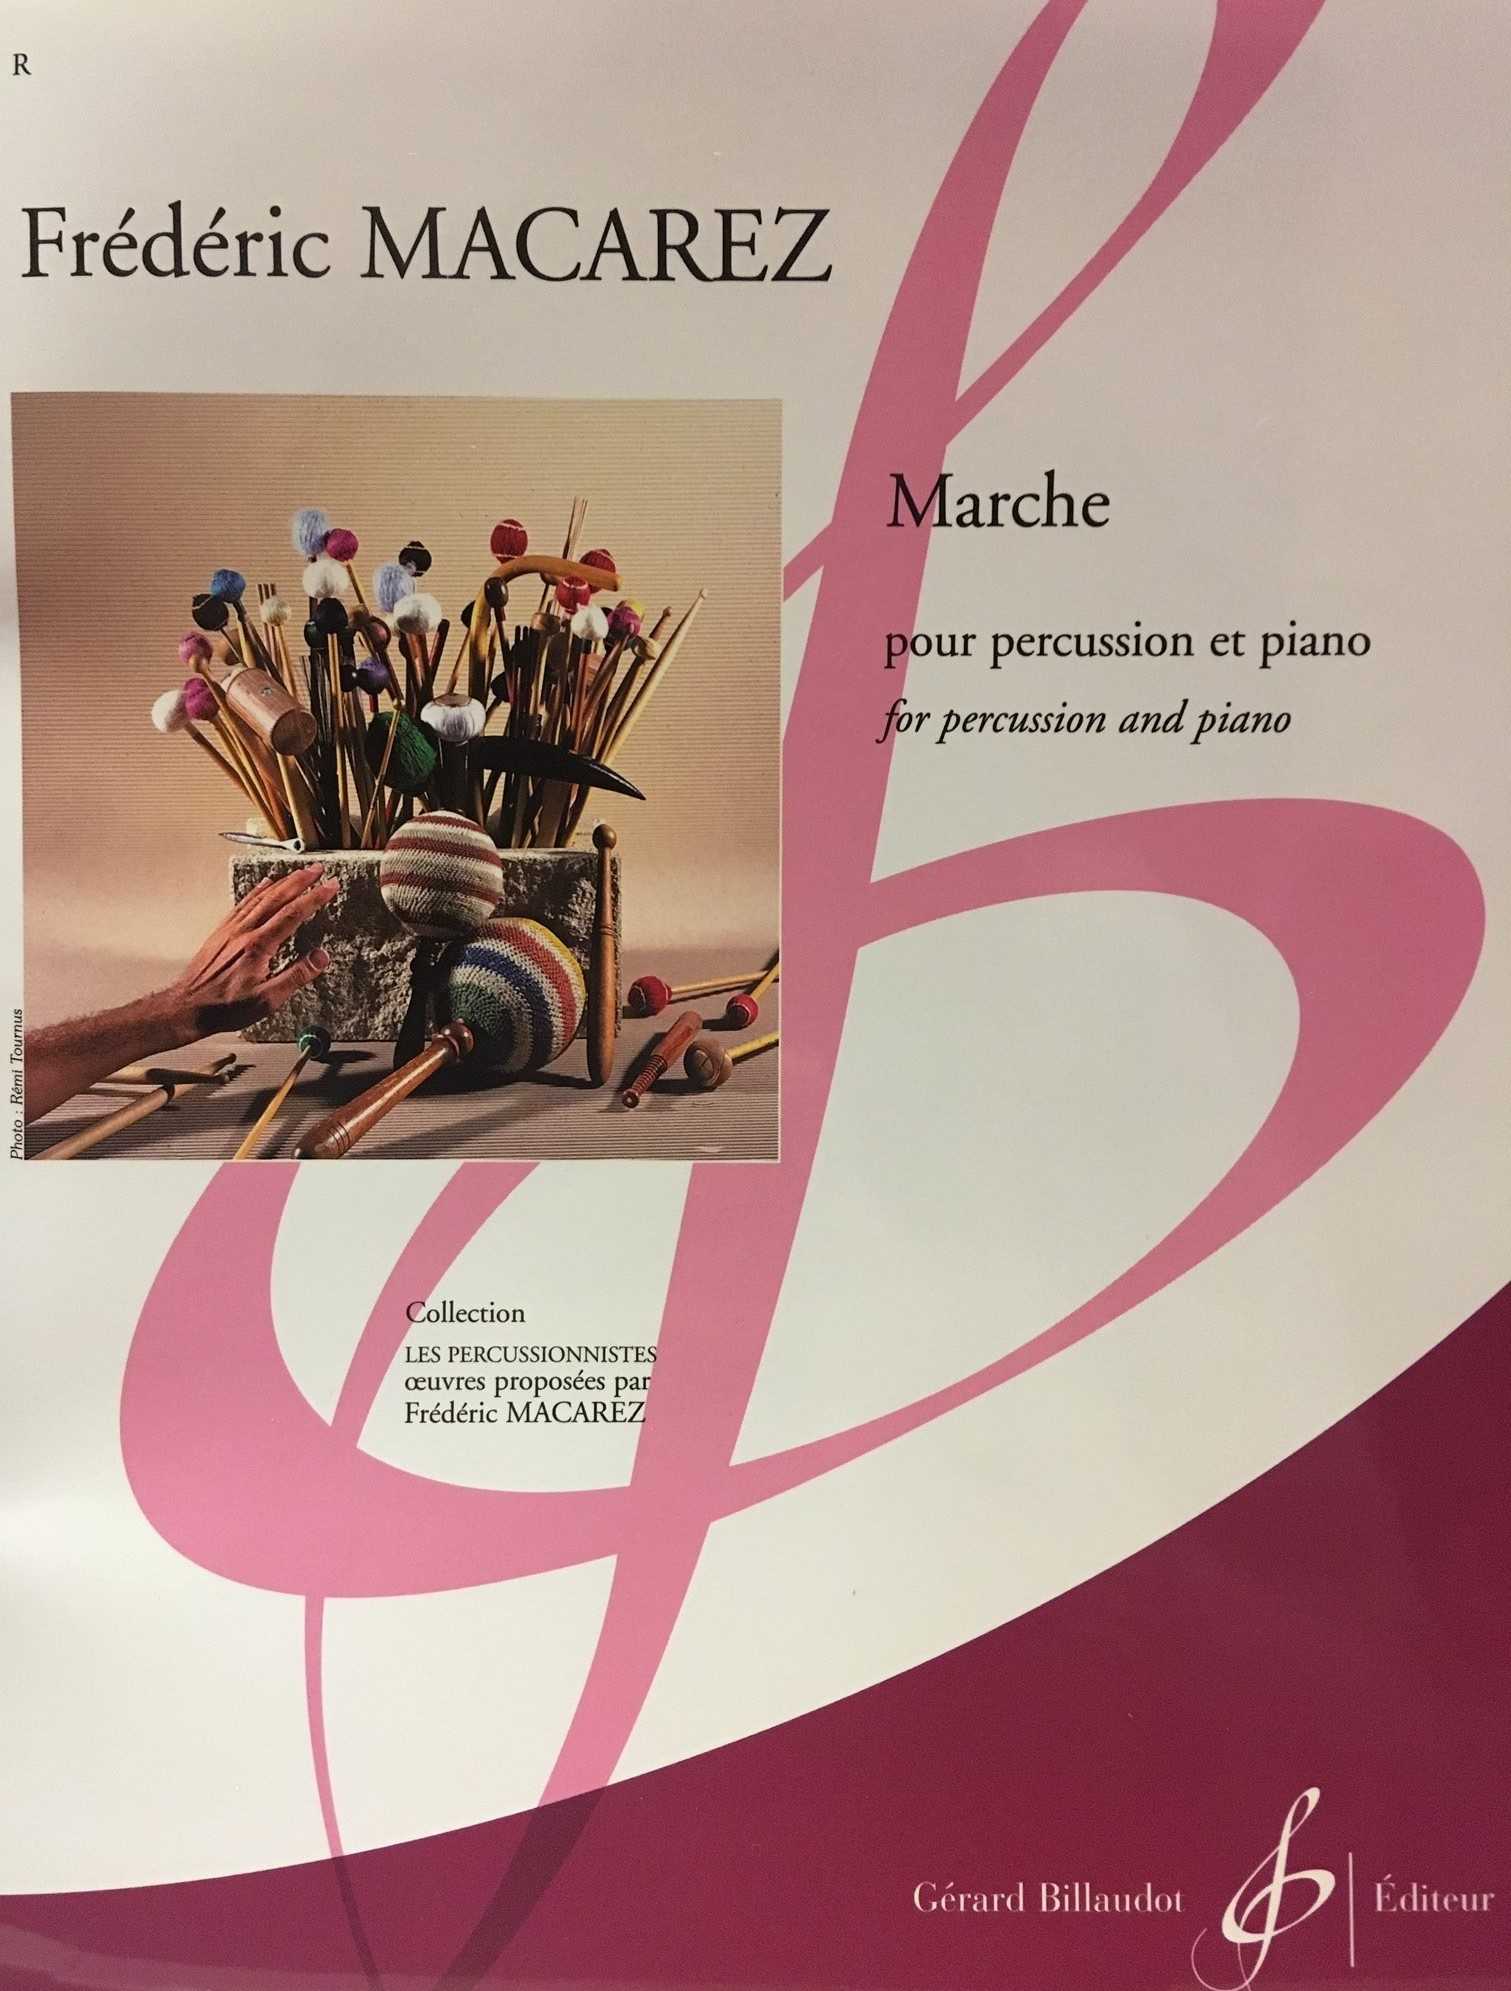 Marche by Frederic Macarez